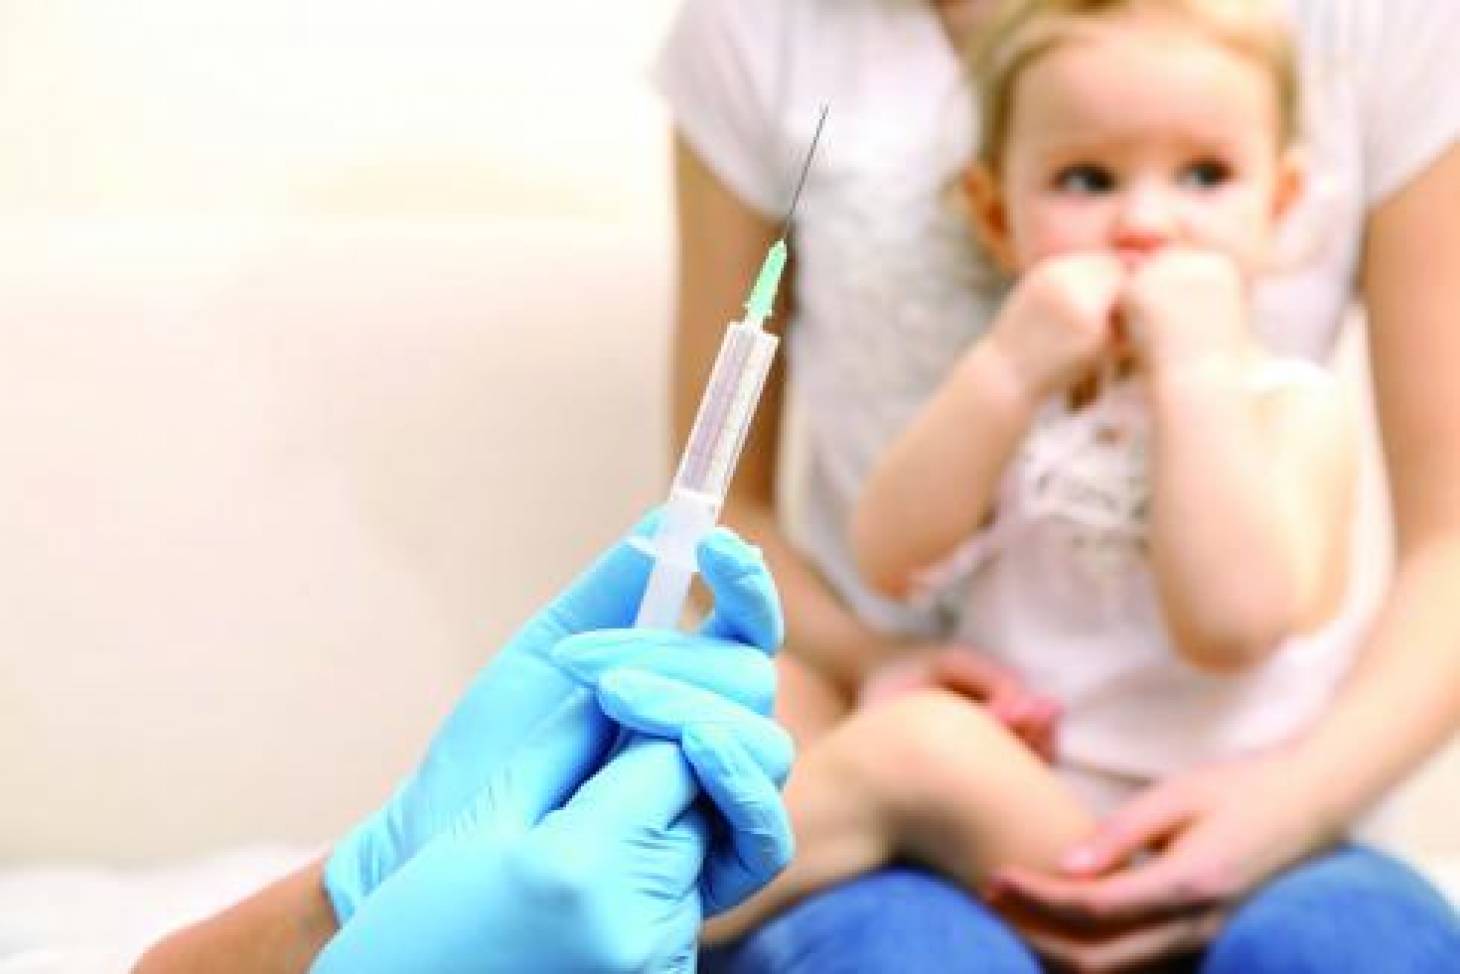 Vaccins : une obligation, pas de consensus